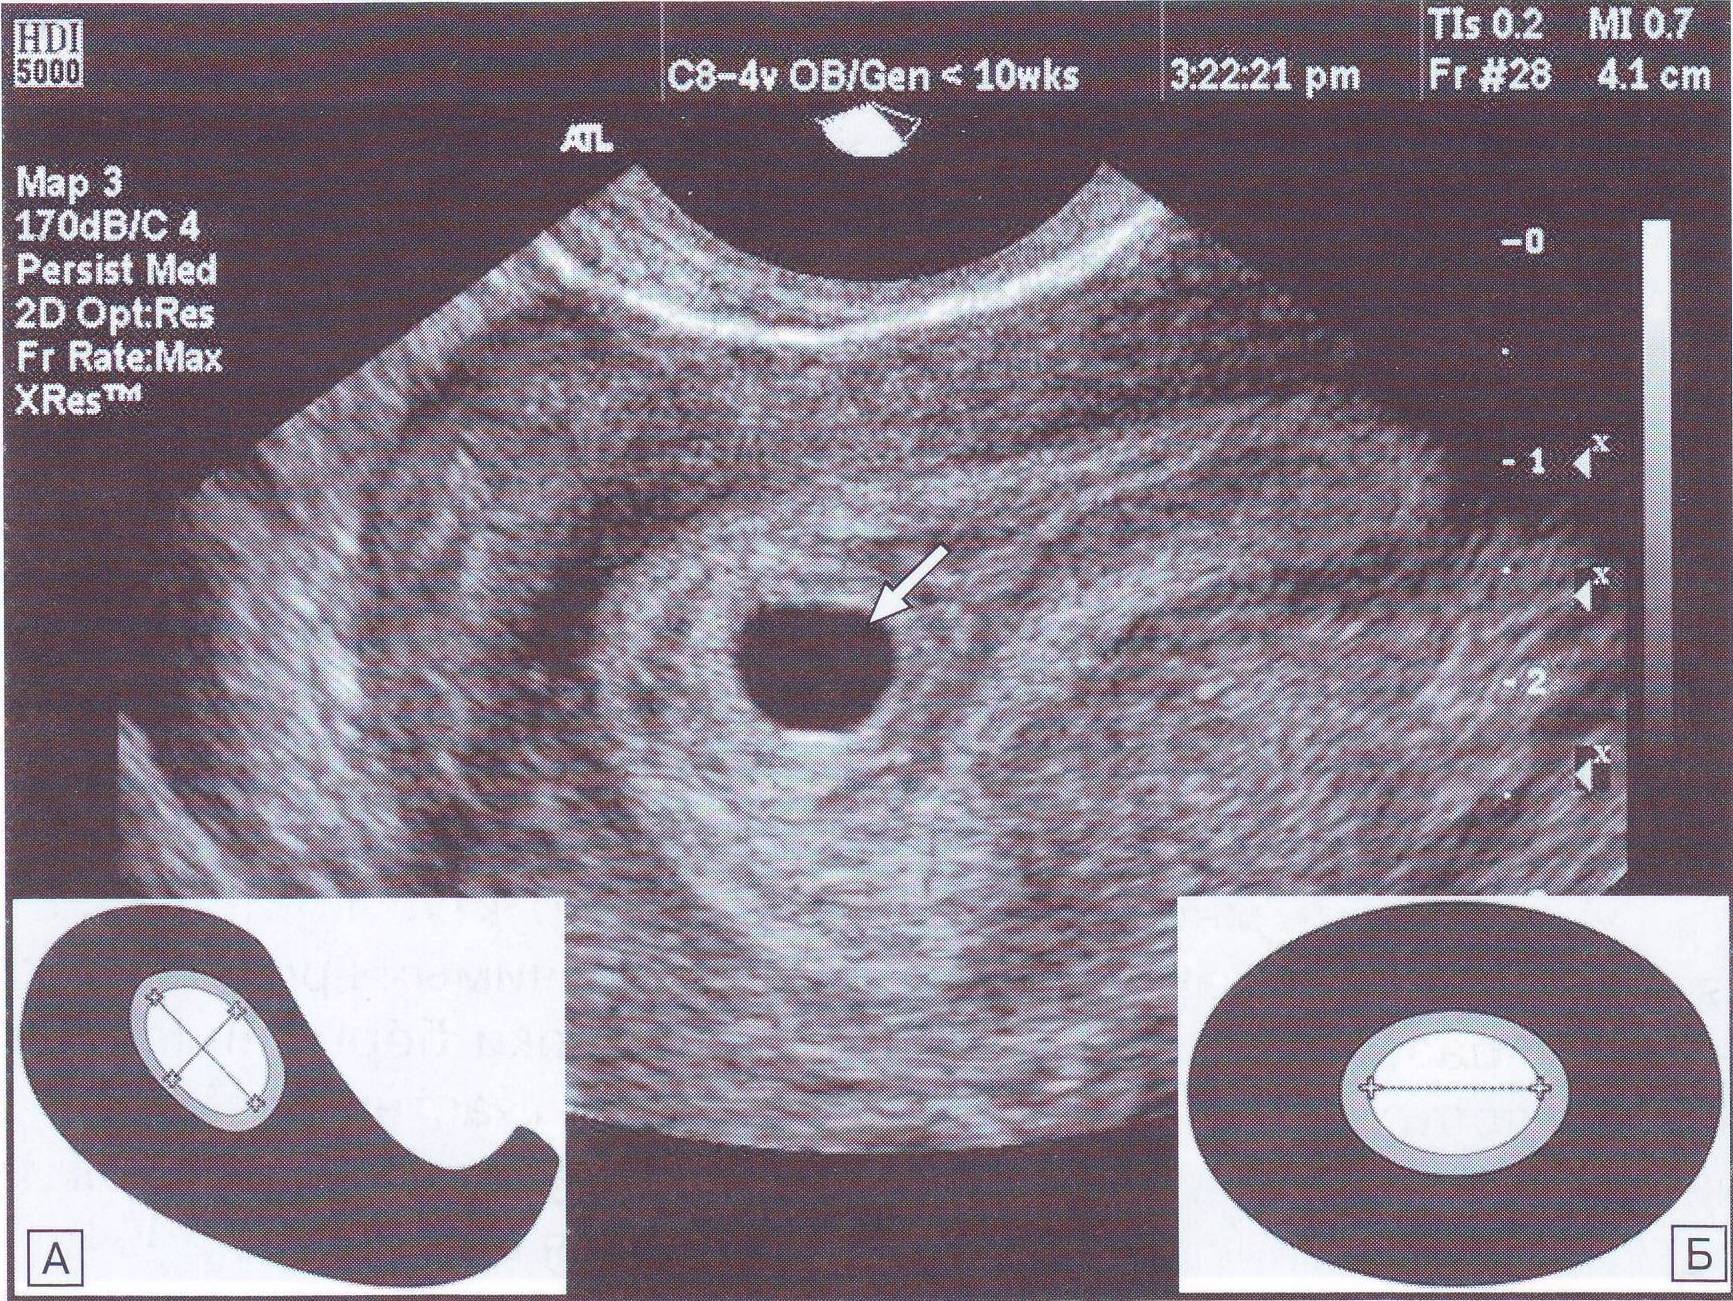 Матка увеличена до 6 недель. Плодное яйцо 4мм эмбрион. УЗИ матки на 5 неделе беременности. Эмбрион на 5 неделе беременности УЗИ. Плодное яйцо по УЗИ 5-6 недель.